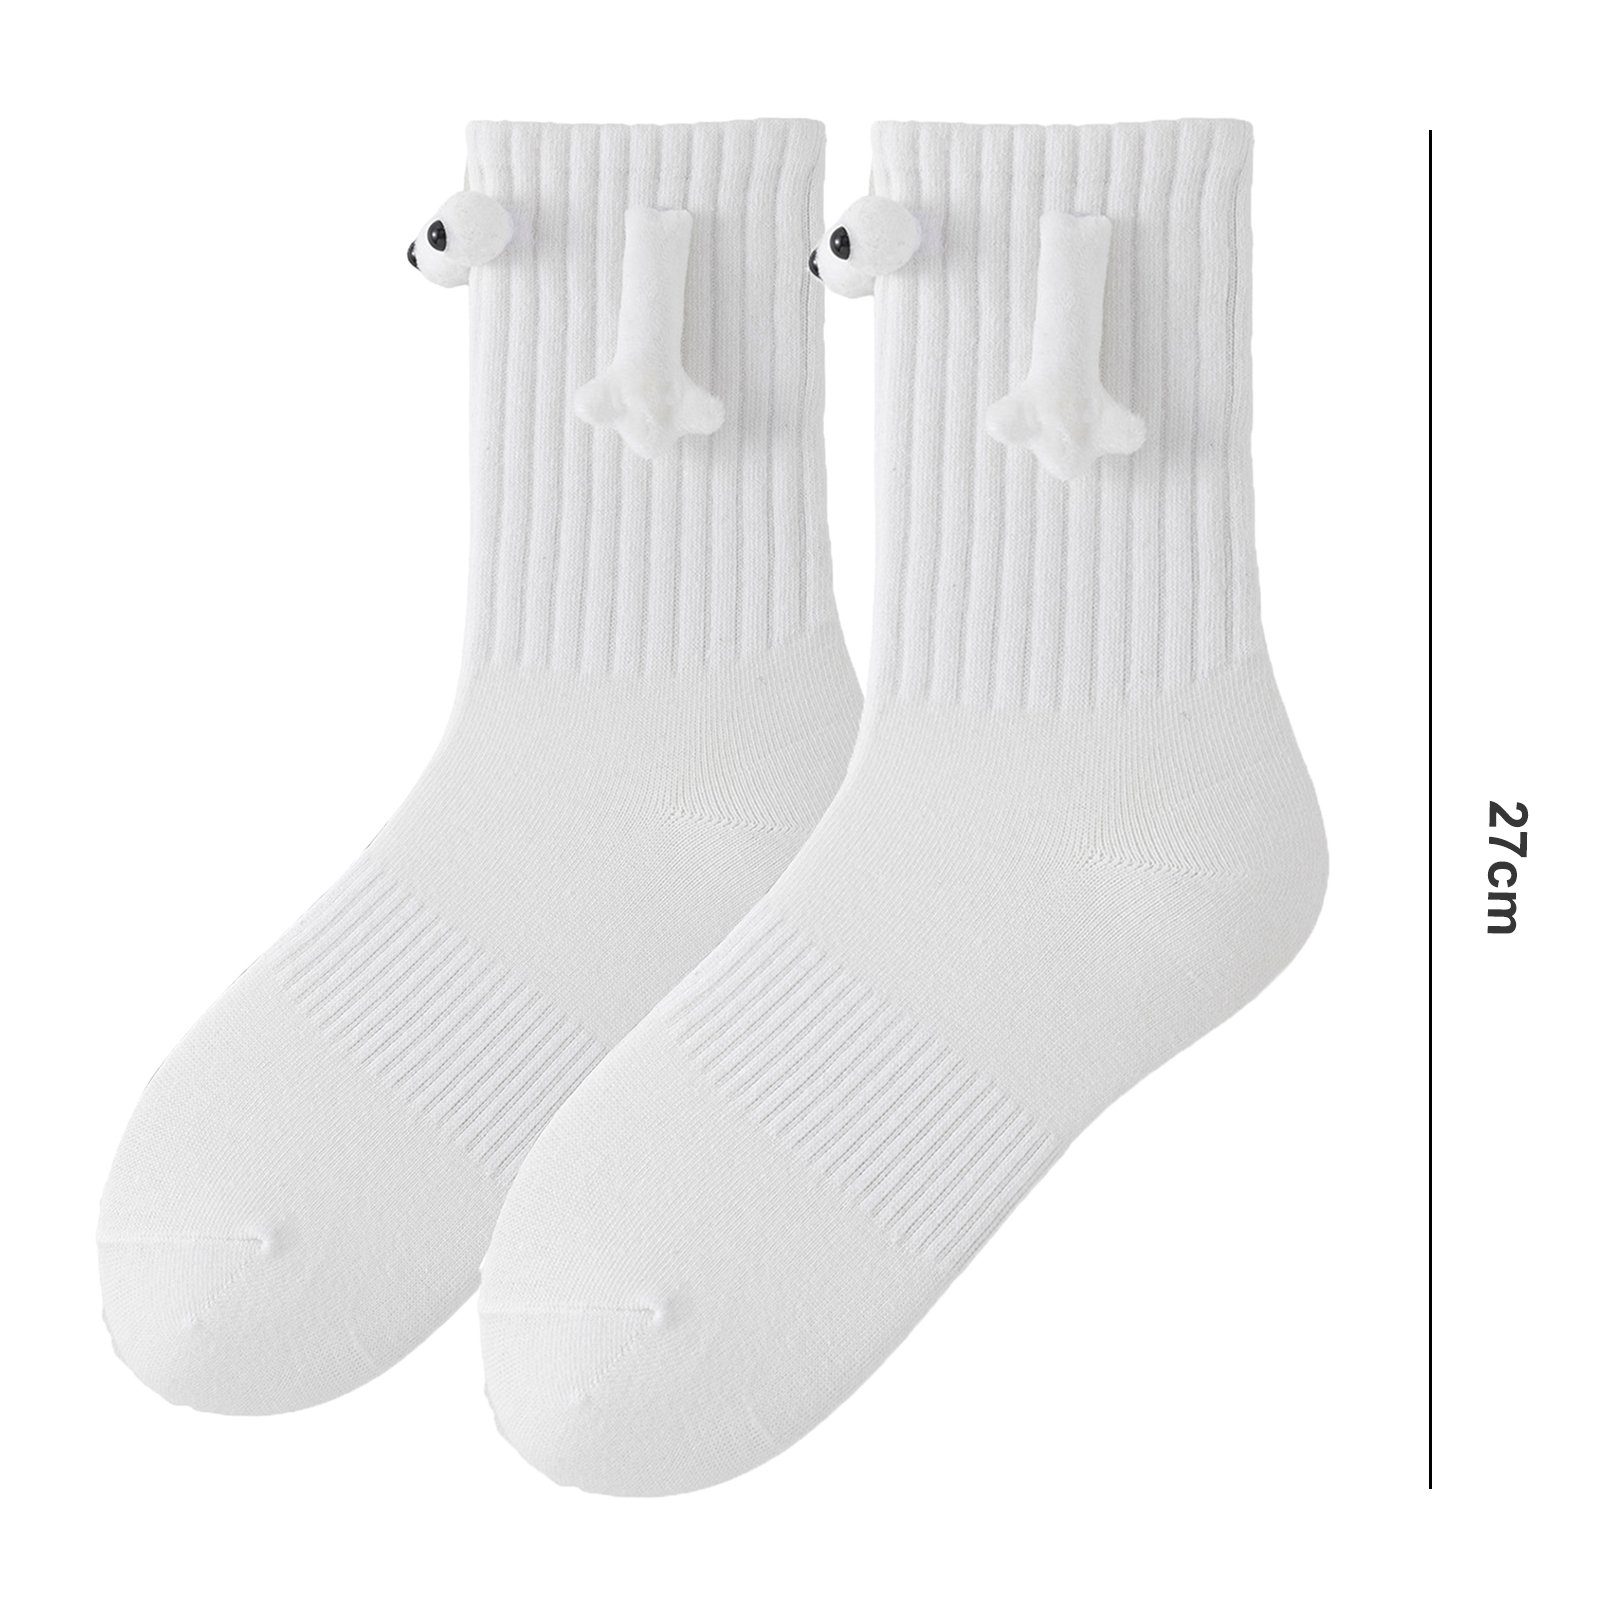 Halten Socken Paar) Süße Socken 1 Weiss Hände Liebhaber Strümpfe Socken Die magnetische (1-Paar, Rutaqian